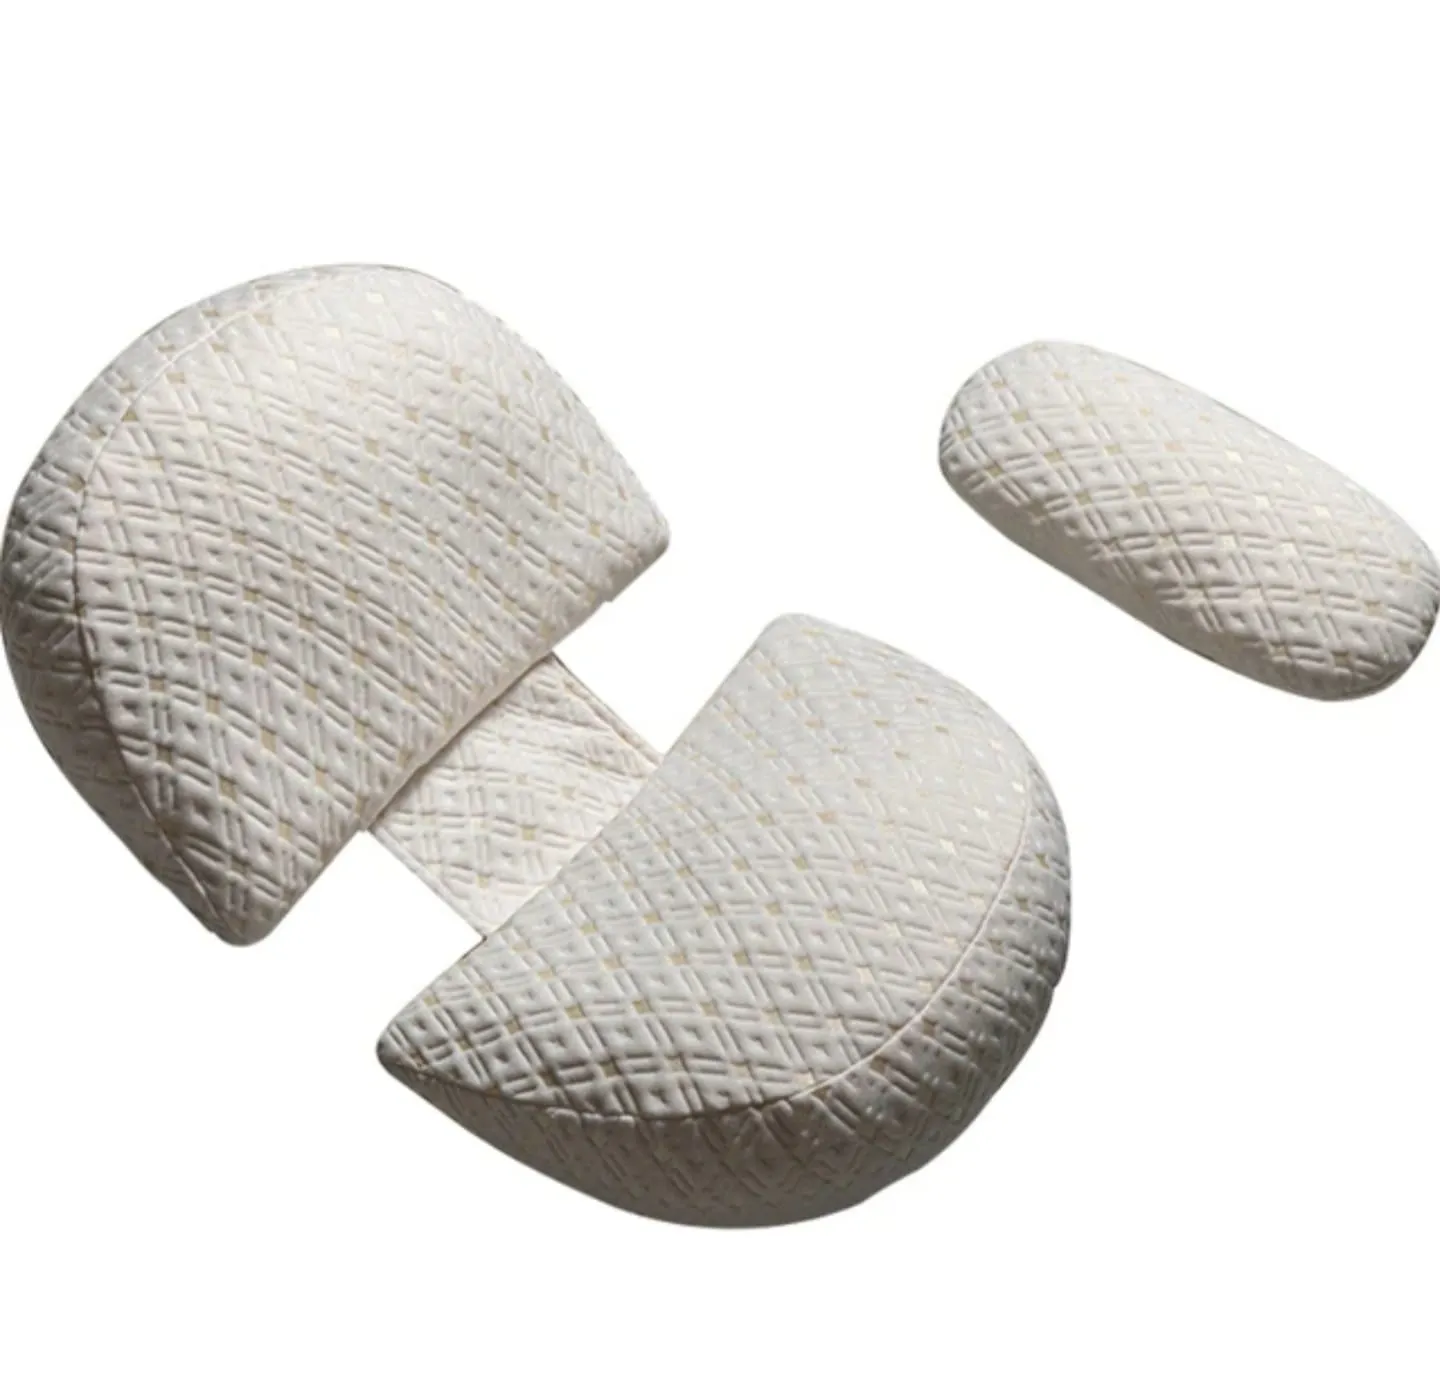 妊娠中のウェッジ枕のためのU字型の妊娠枕腹部腰の脚調整可能な取り外し可能な腹枕をサポートする